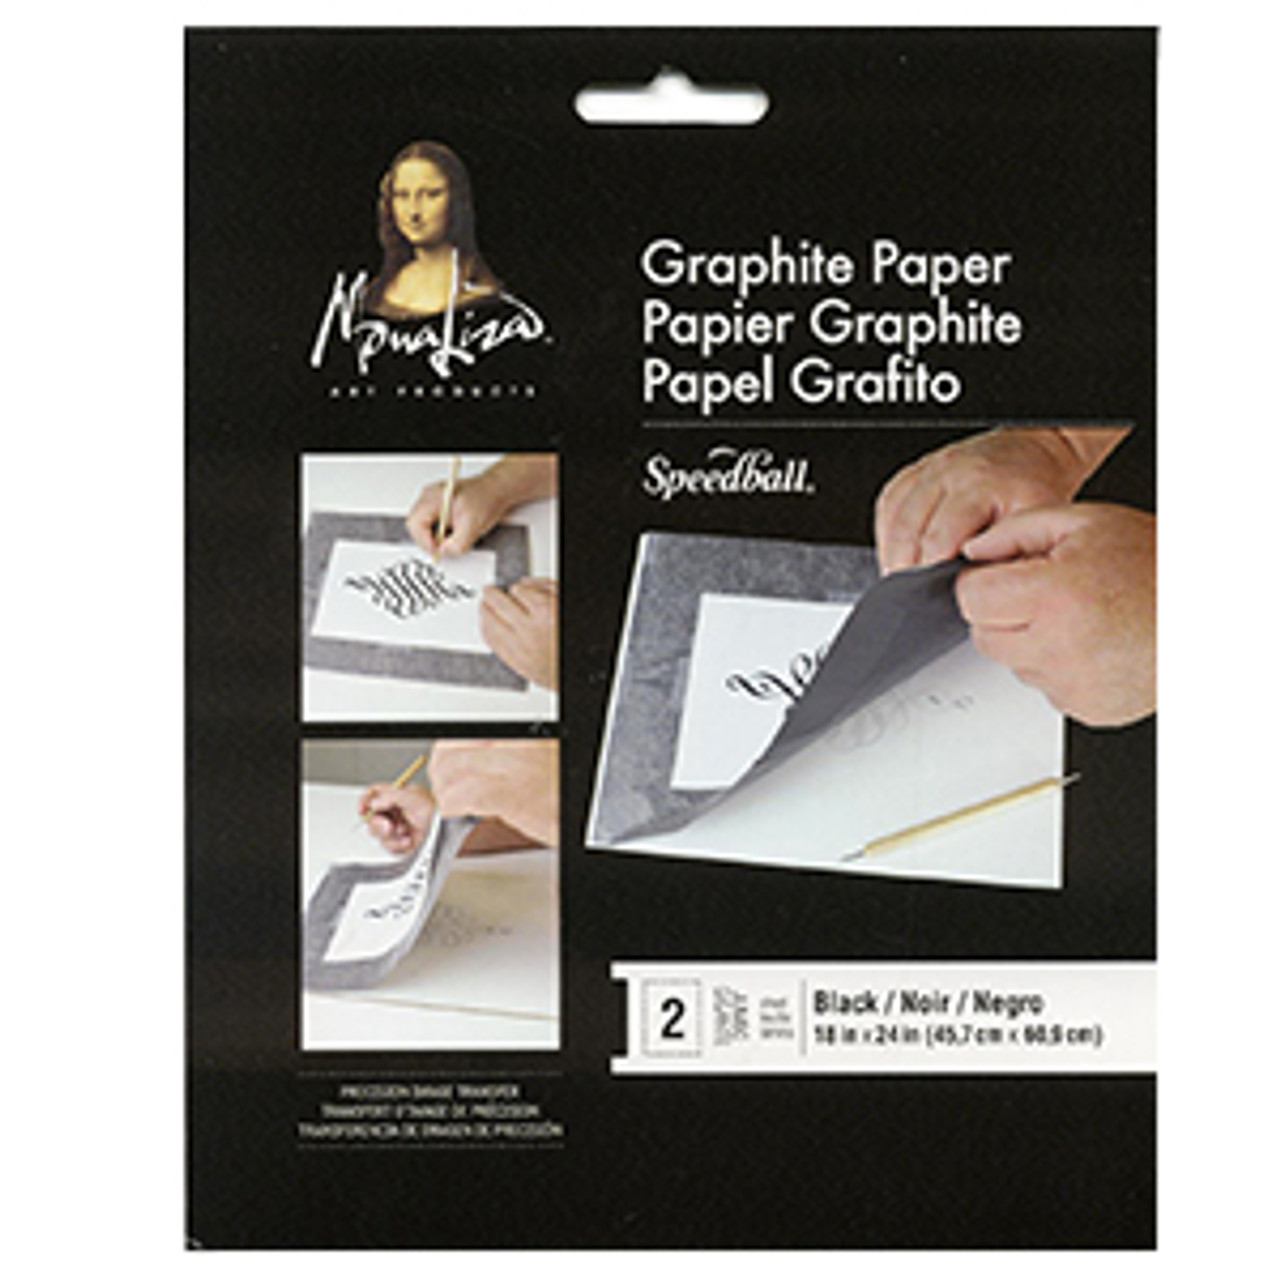 Graphite Transfer Paper For Wood, Metal, Paper, Ceramics & More, 18" X 24" 2pk